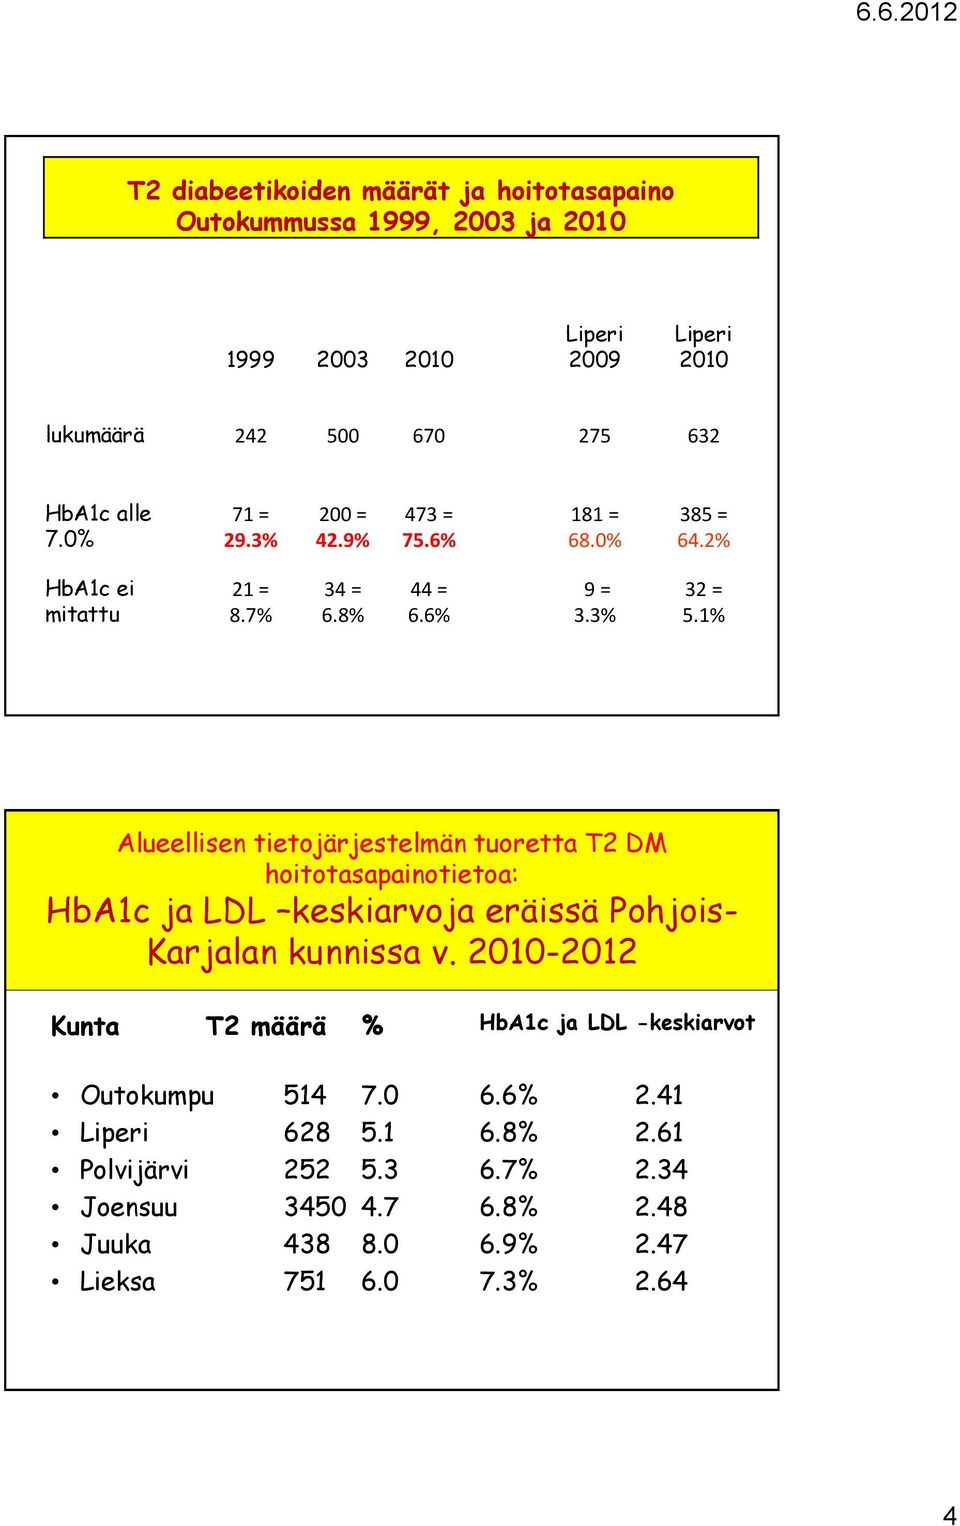 1% Alueellisen tietojärjestelmän tuoretta T2 DM hoitotasapainotietoa: HbA1c ja LDL keskiarvoja eräissä Pohjois- Karjalan kunnissa v.